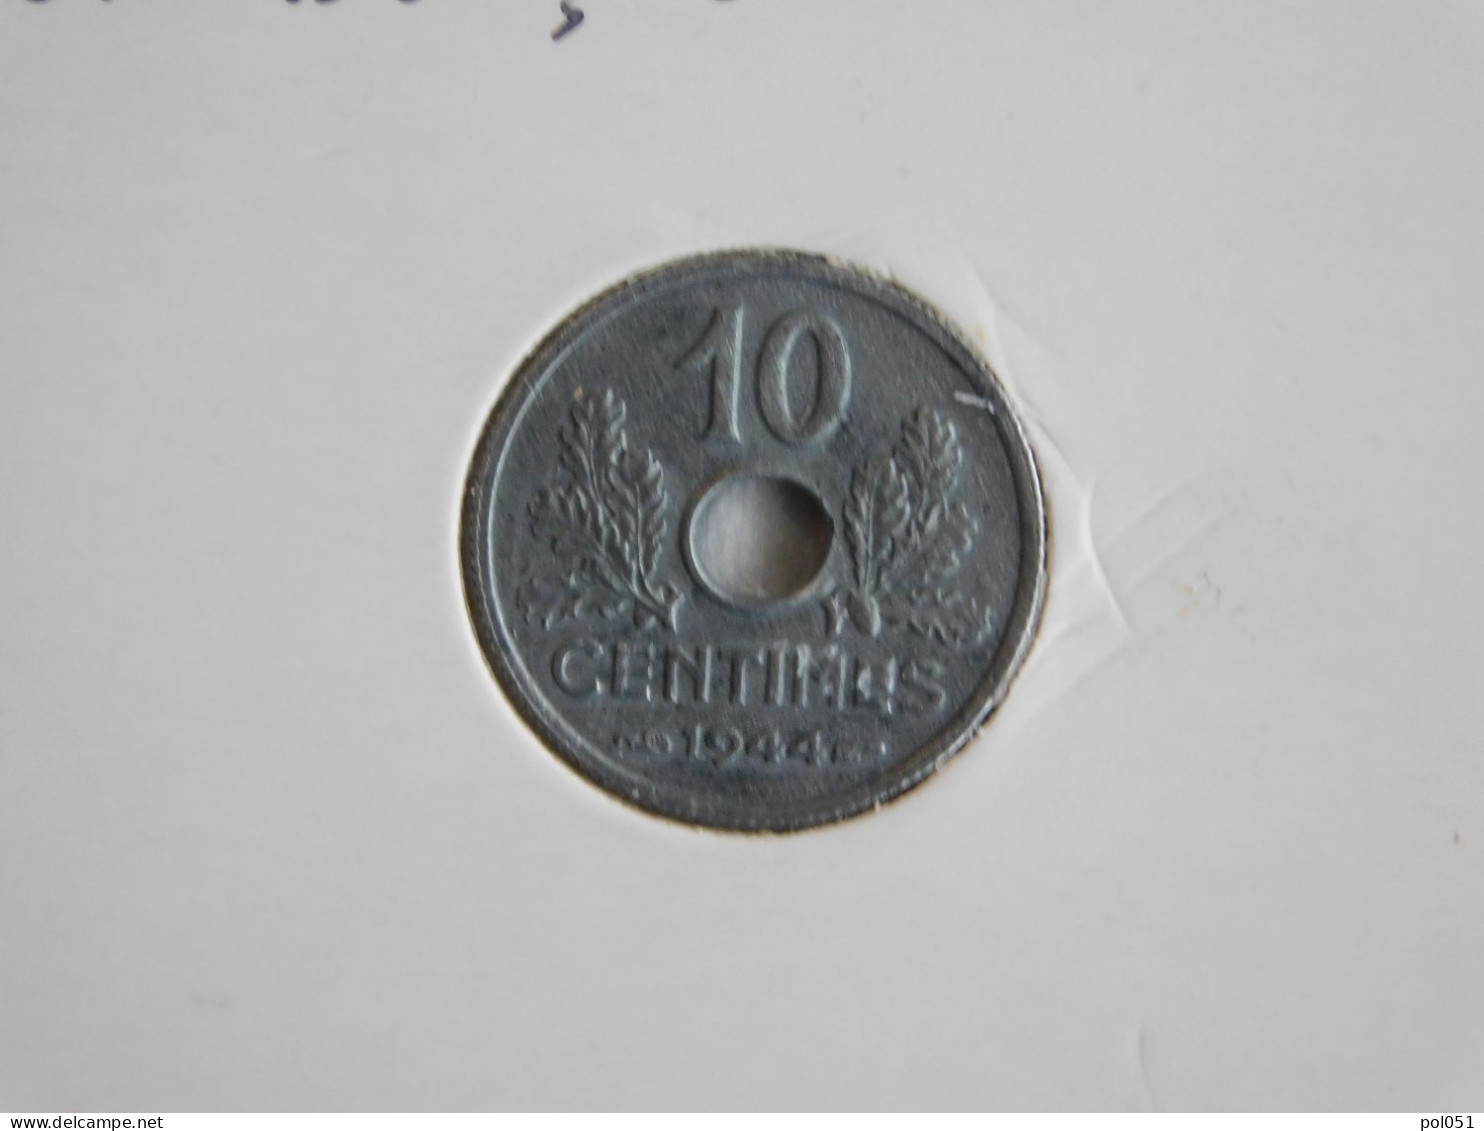 France 10 Centimes 1944  ÉTAT FRANÇAIS, PETIT MODULE (377) - 10 Centimes